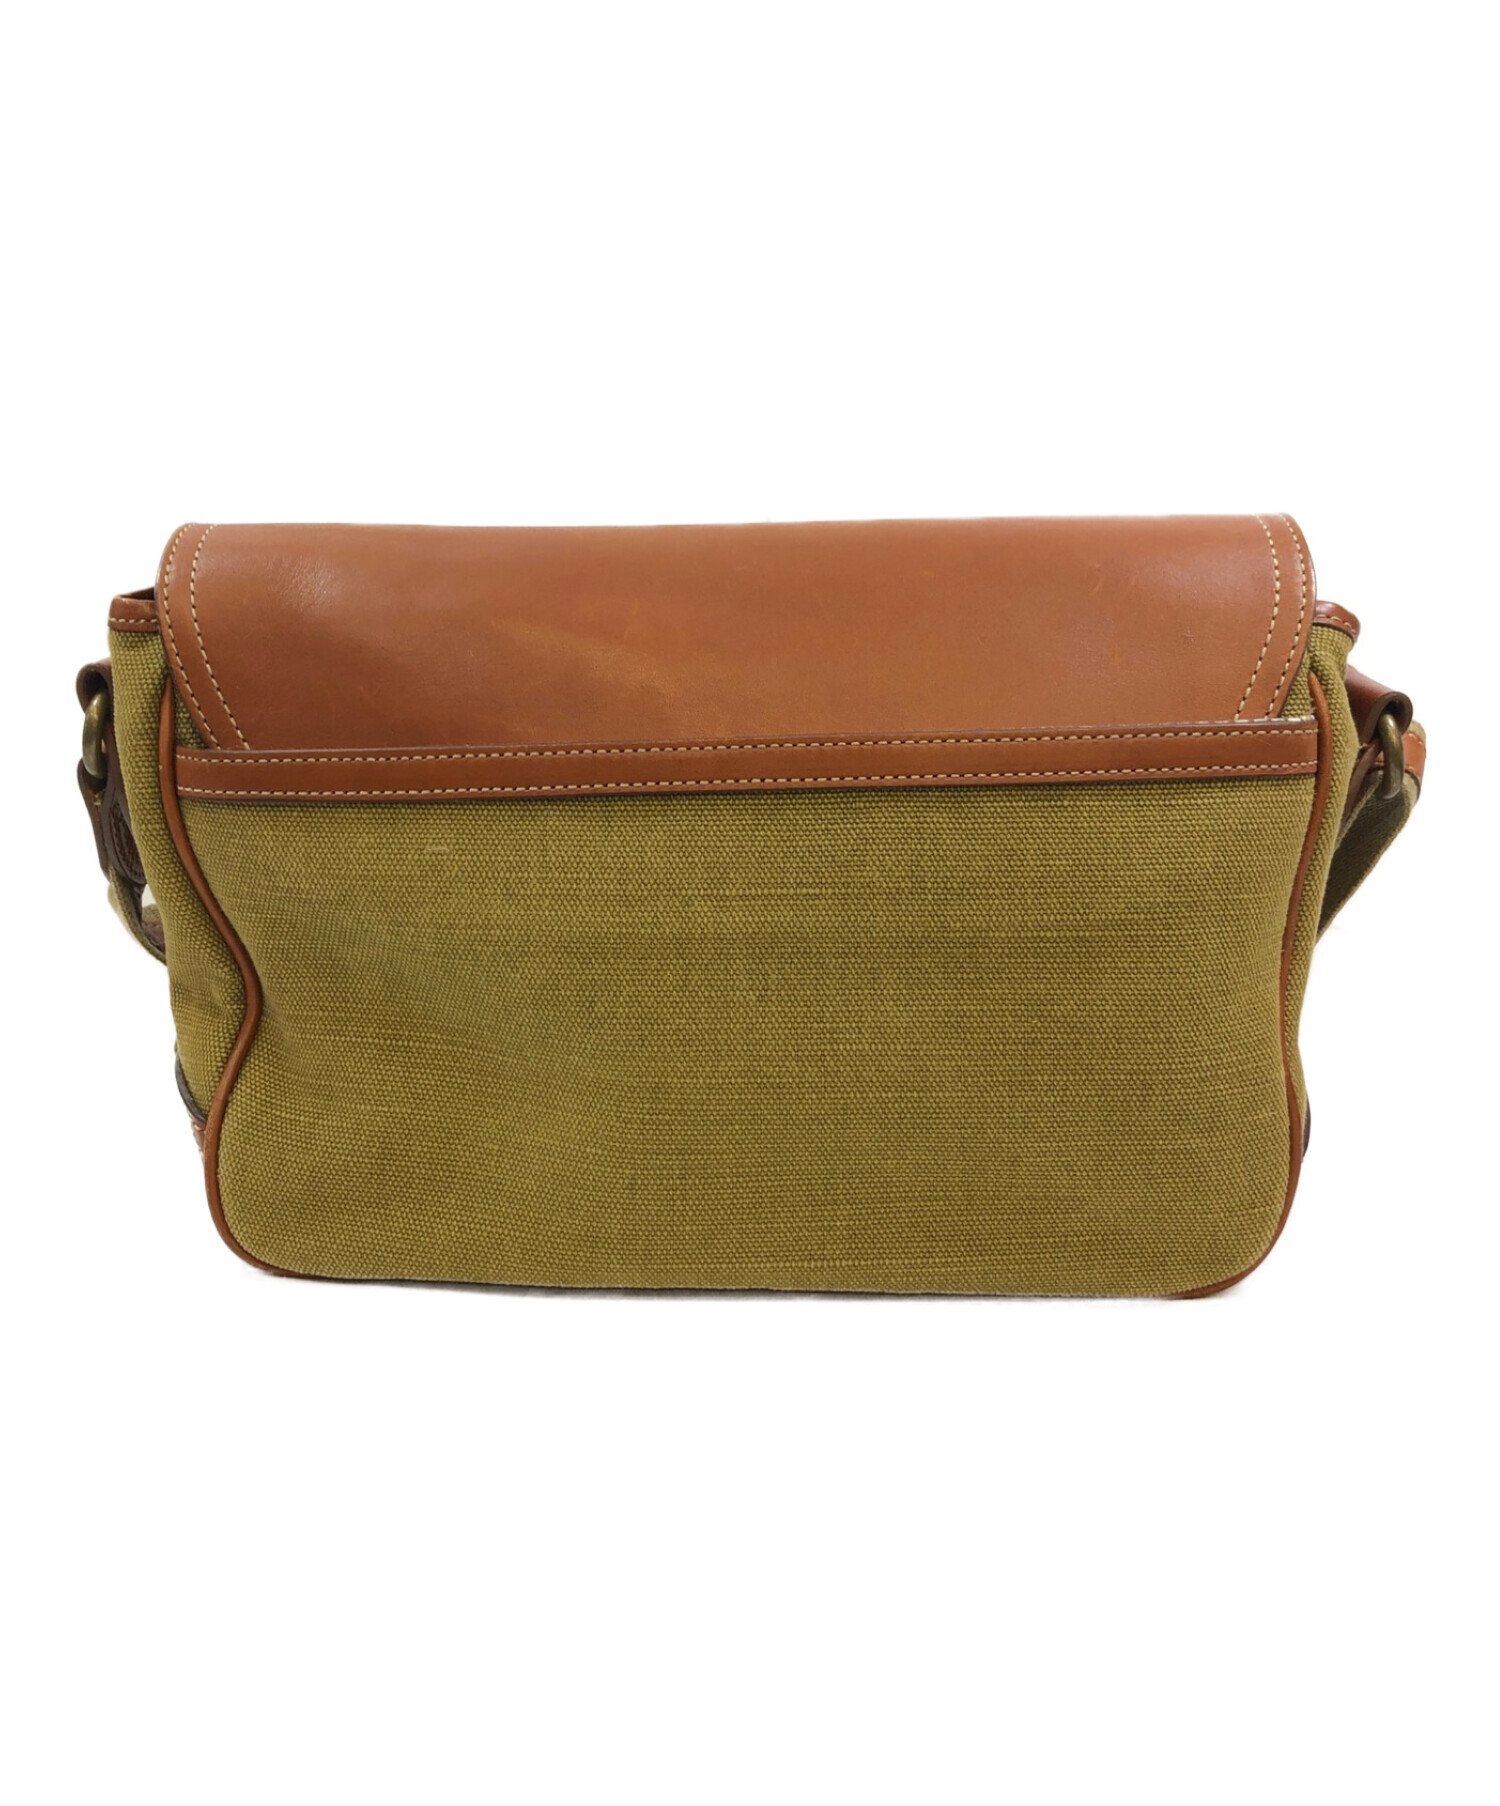 土屋鞄 (ツチヤカバン) カメラ散歩バッグ/ショルダーバッグ ブラウン×グリーン